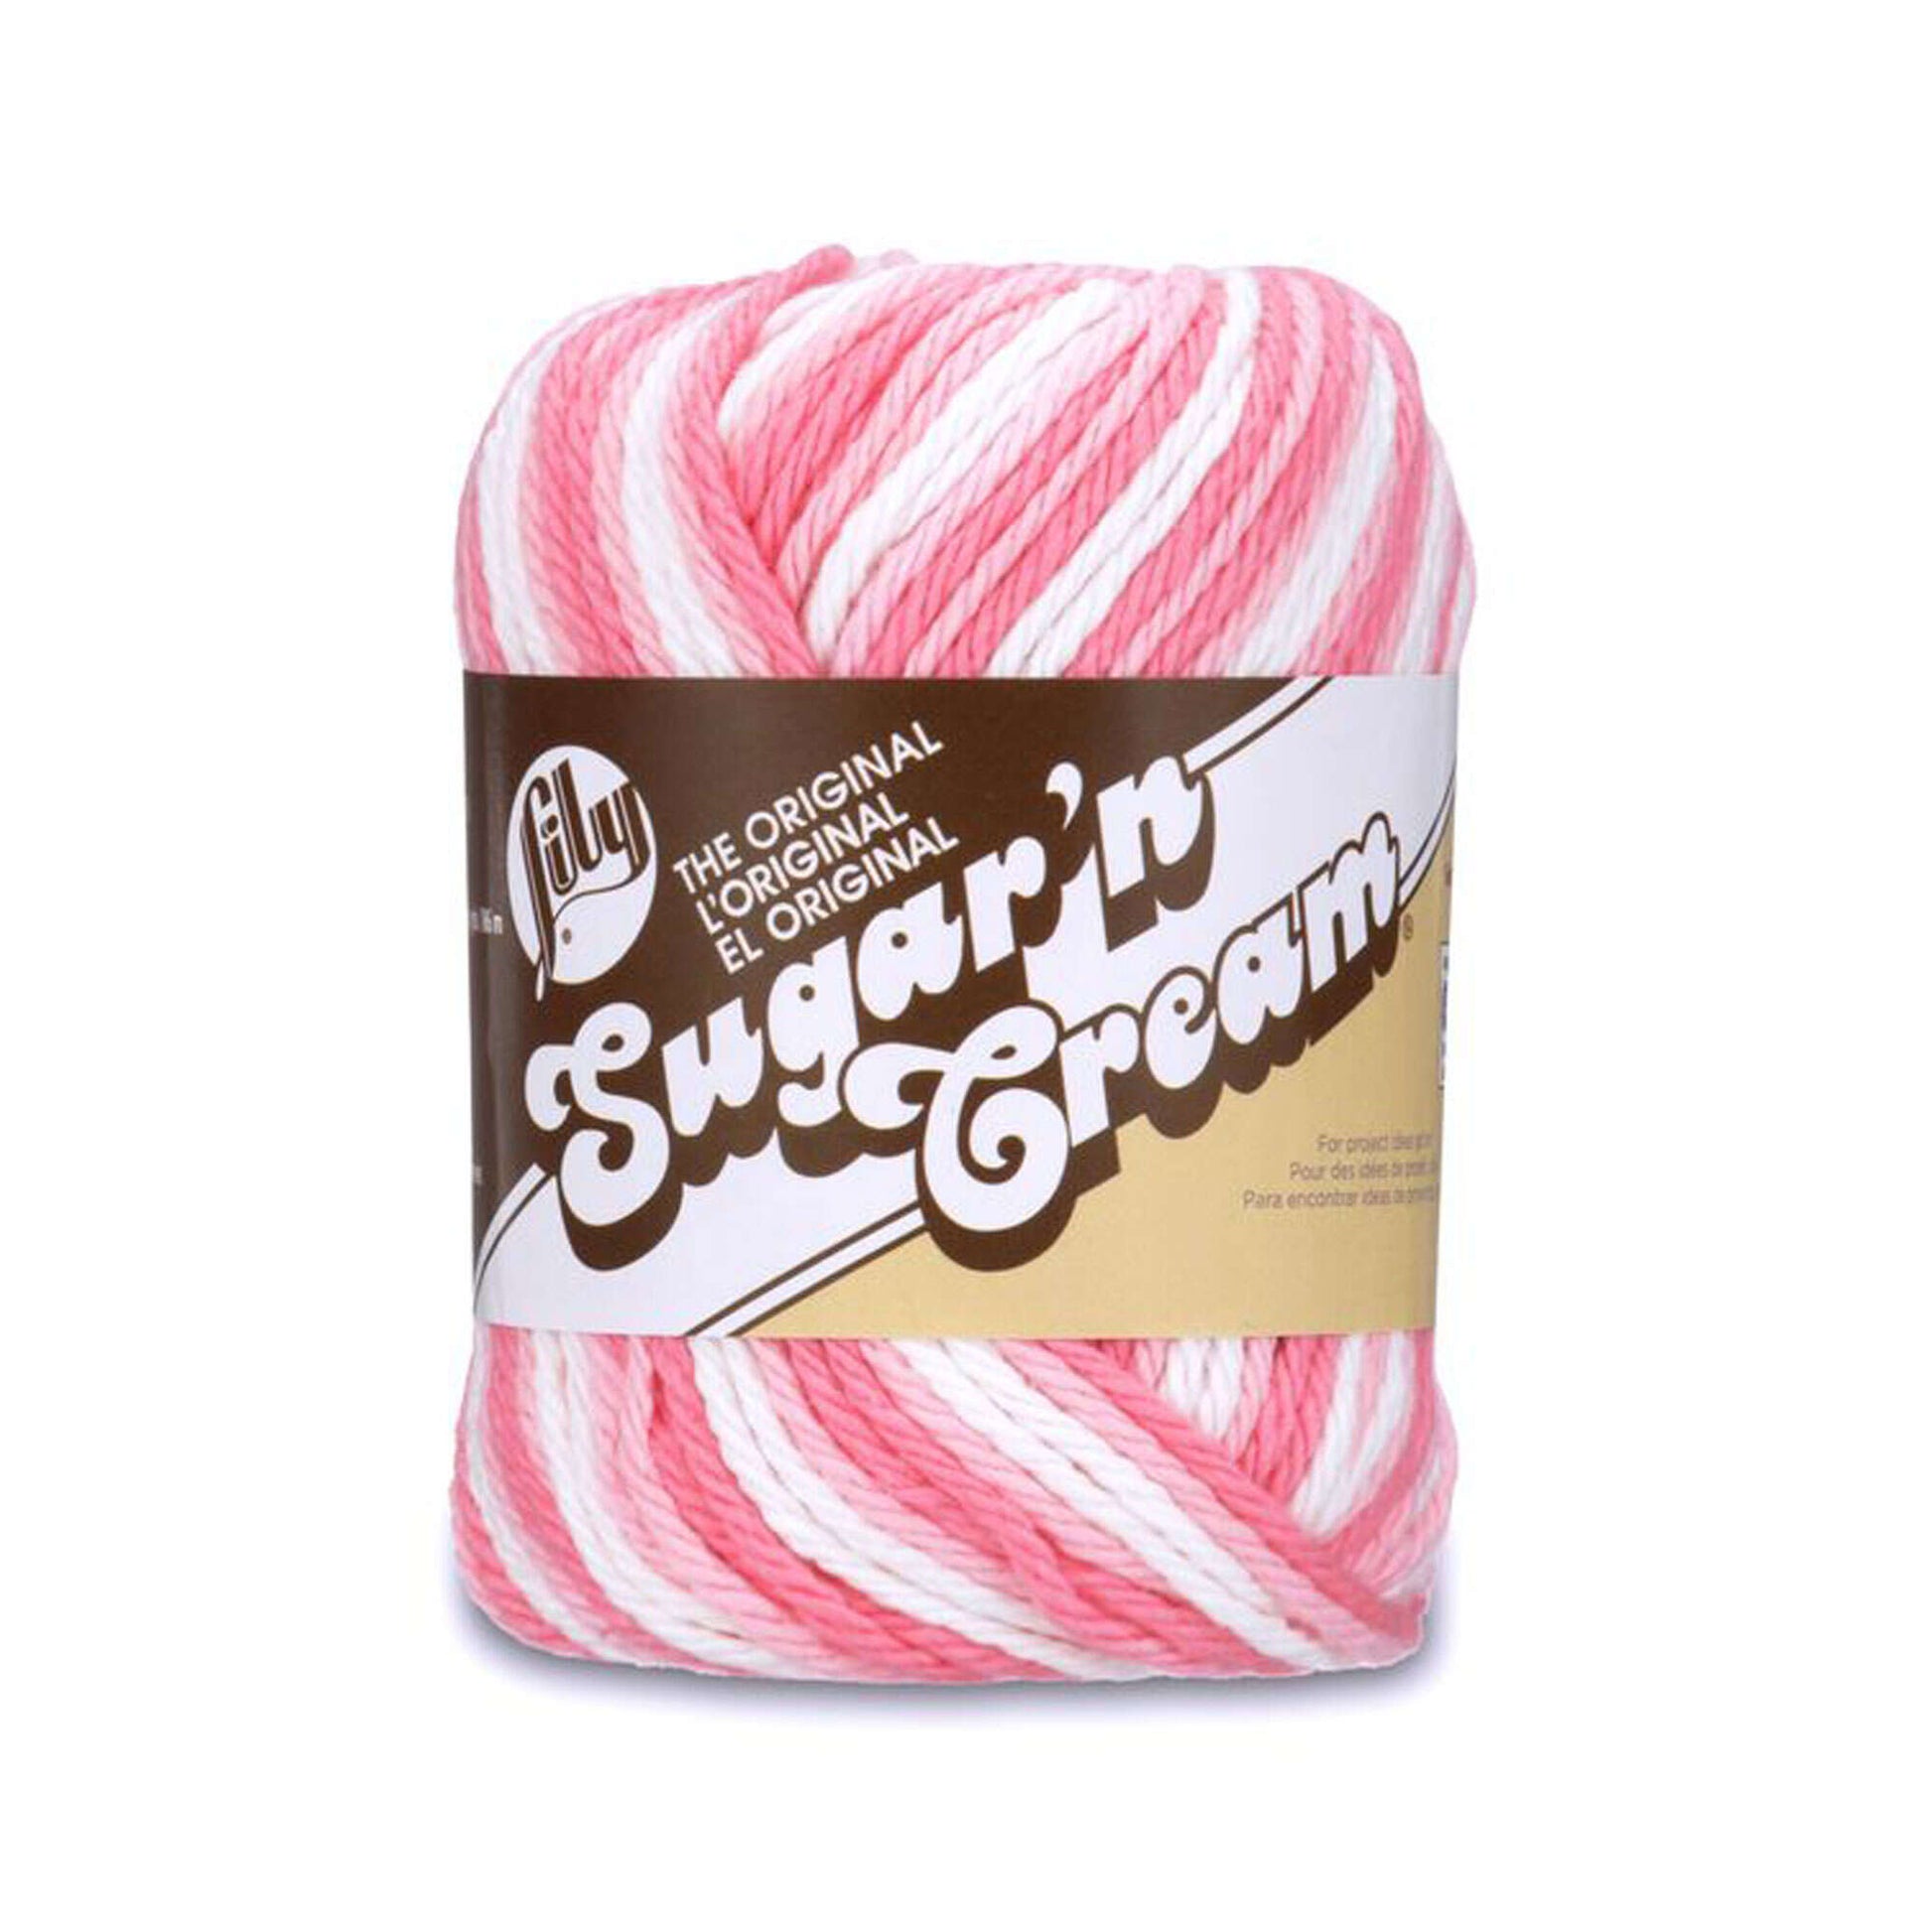 Bernat Sugar'n Cream Cotton Yarn - Red